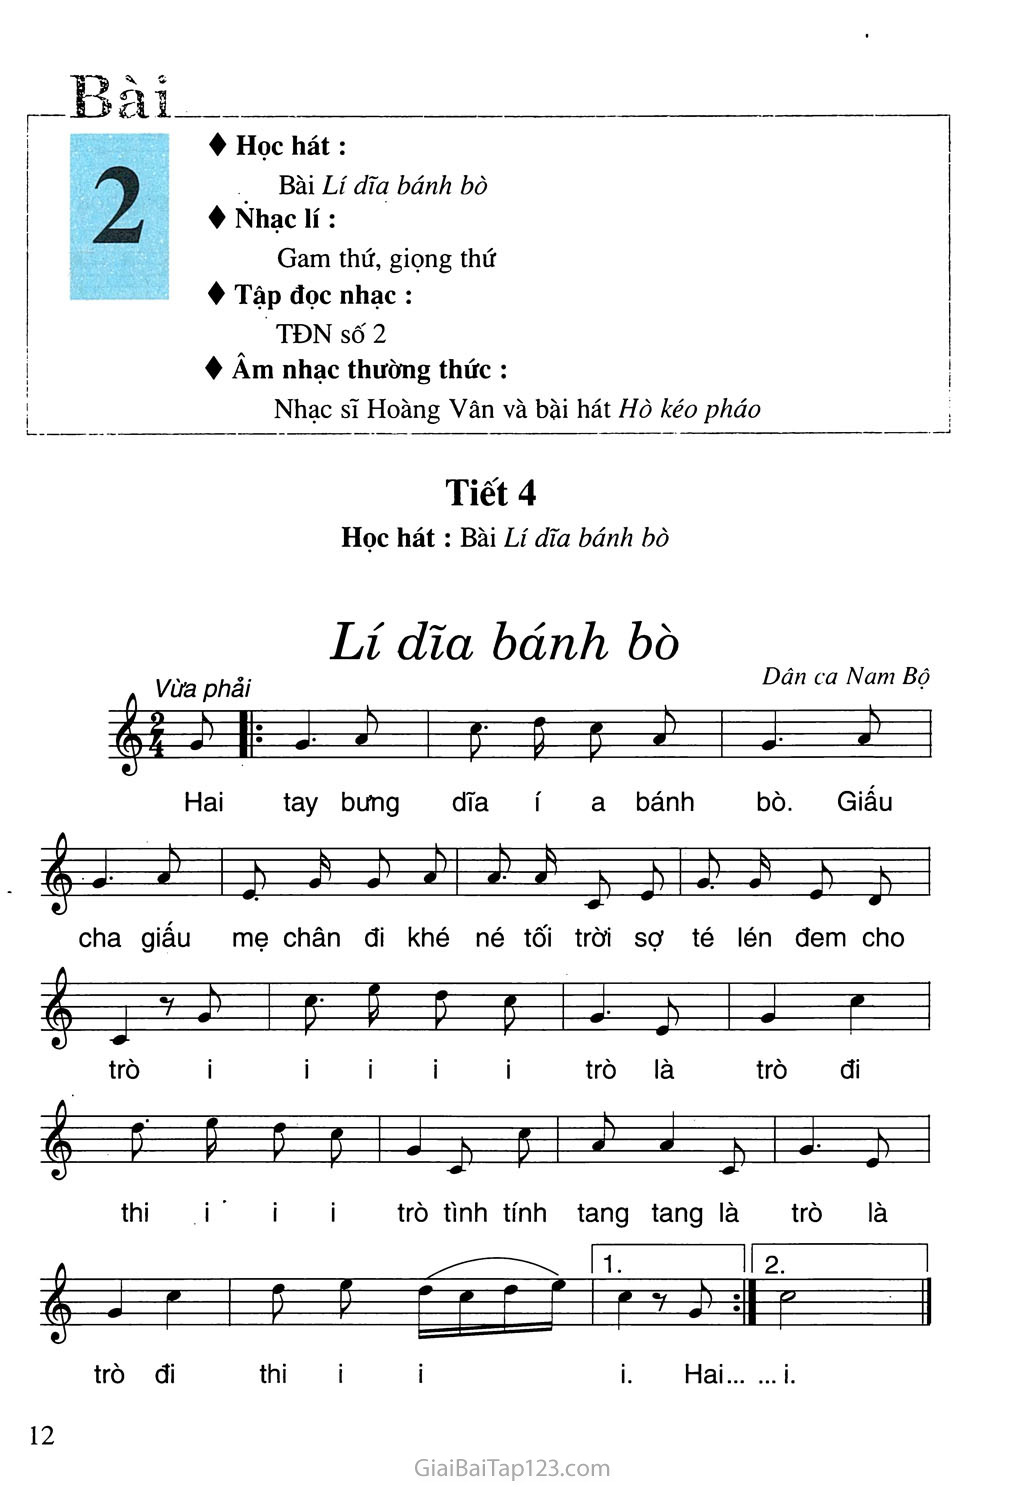 Tiết 4. Học hát: Bài Lí dĩa bánh bò trang 1